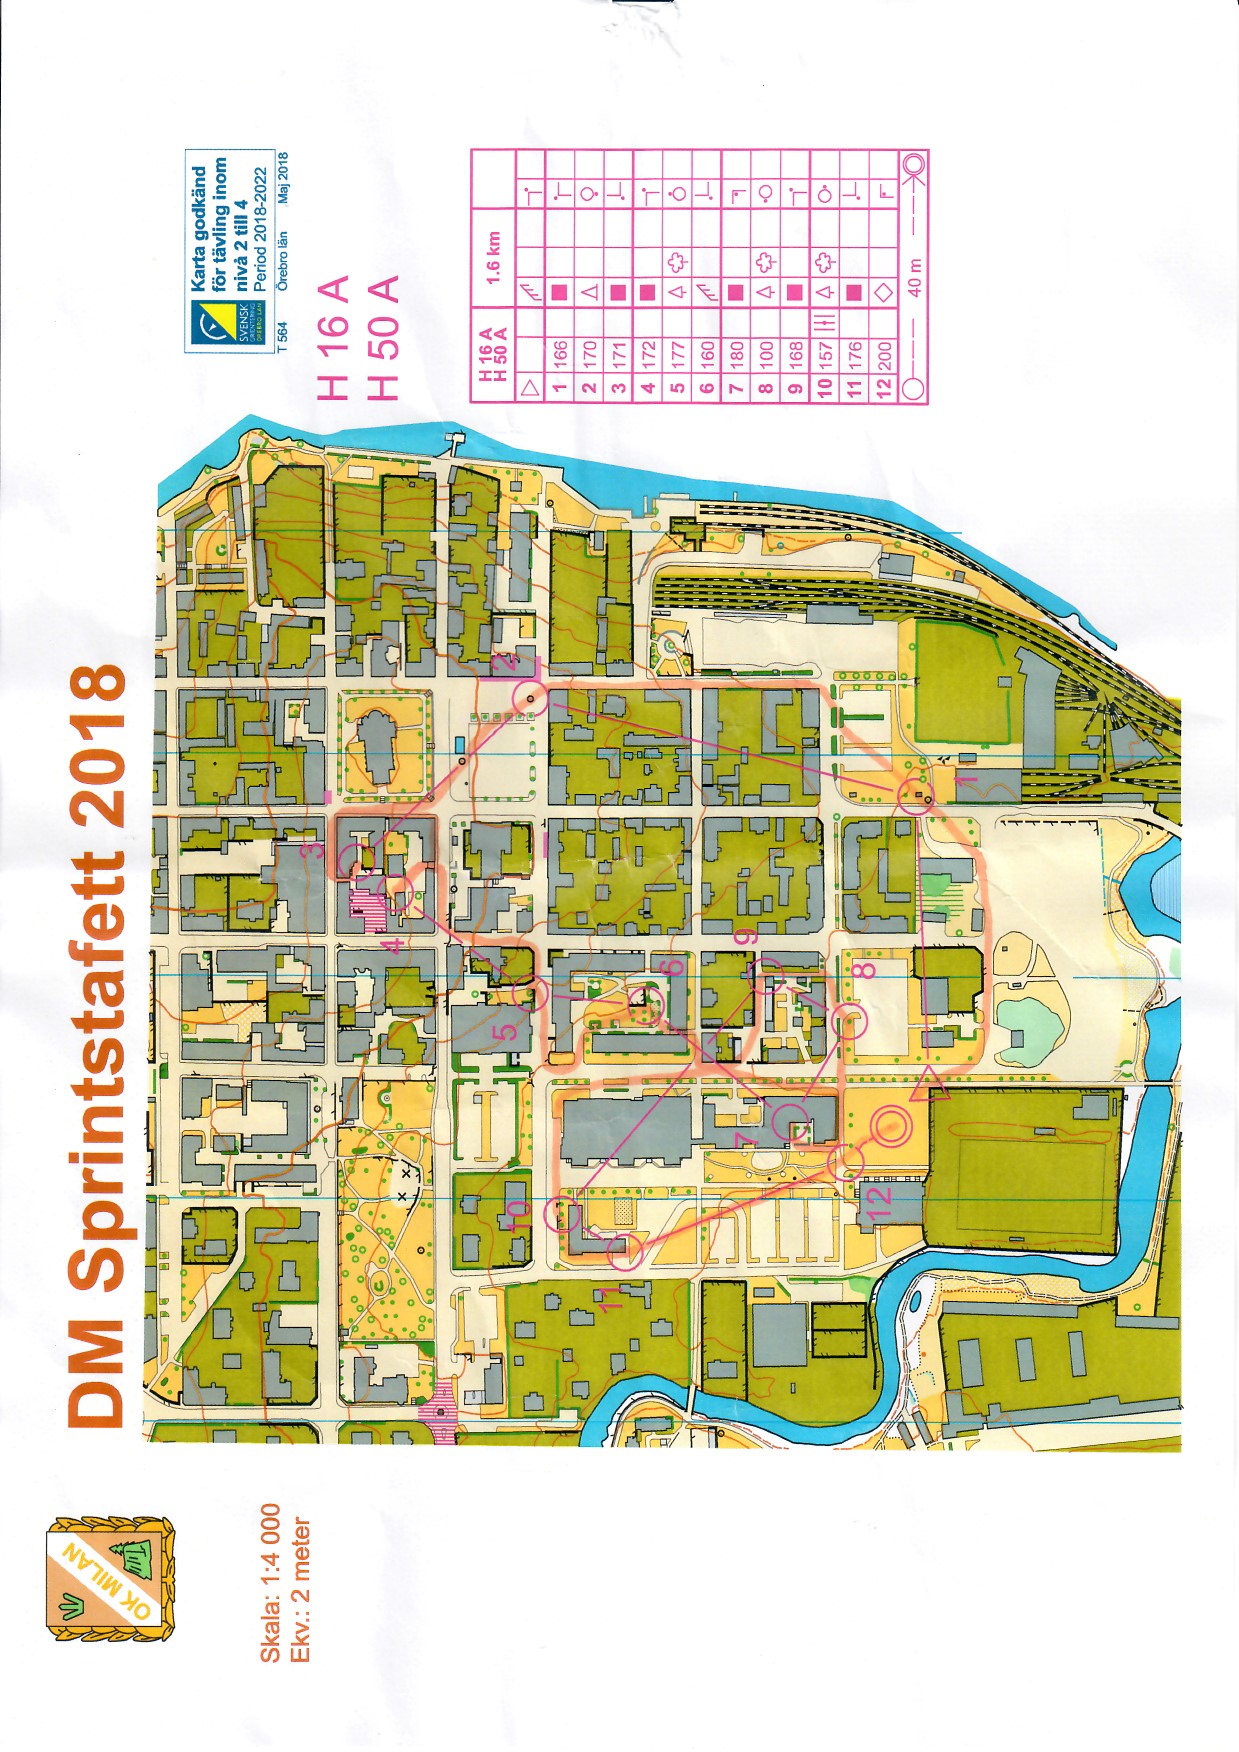 DM Sprintstafett, Örebro (10-06-2018)